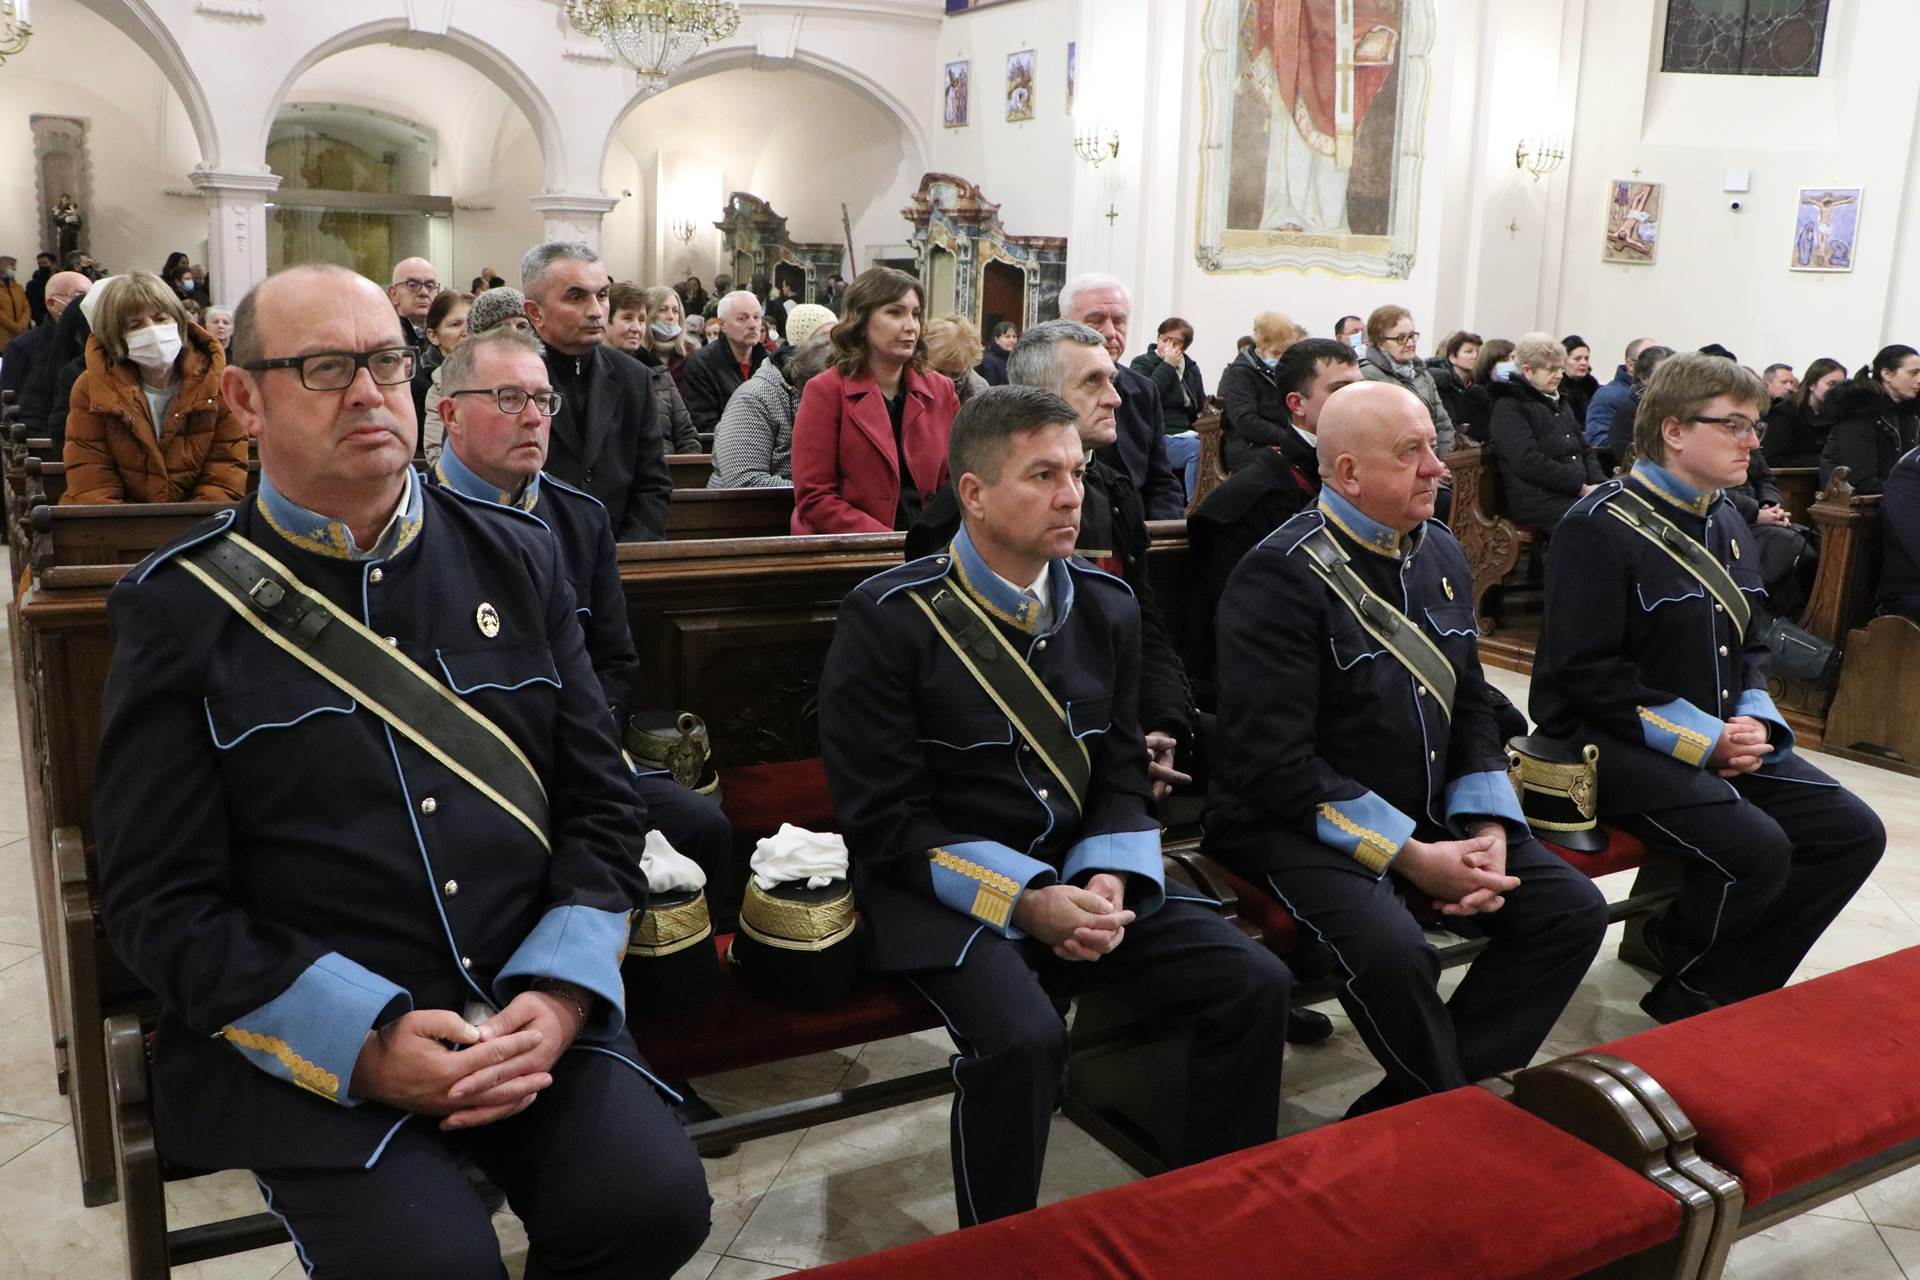 Požega.eu | Dvadeseta obljetnica smrti kardinala Franje Kuharića u Požegi